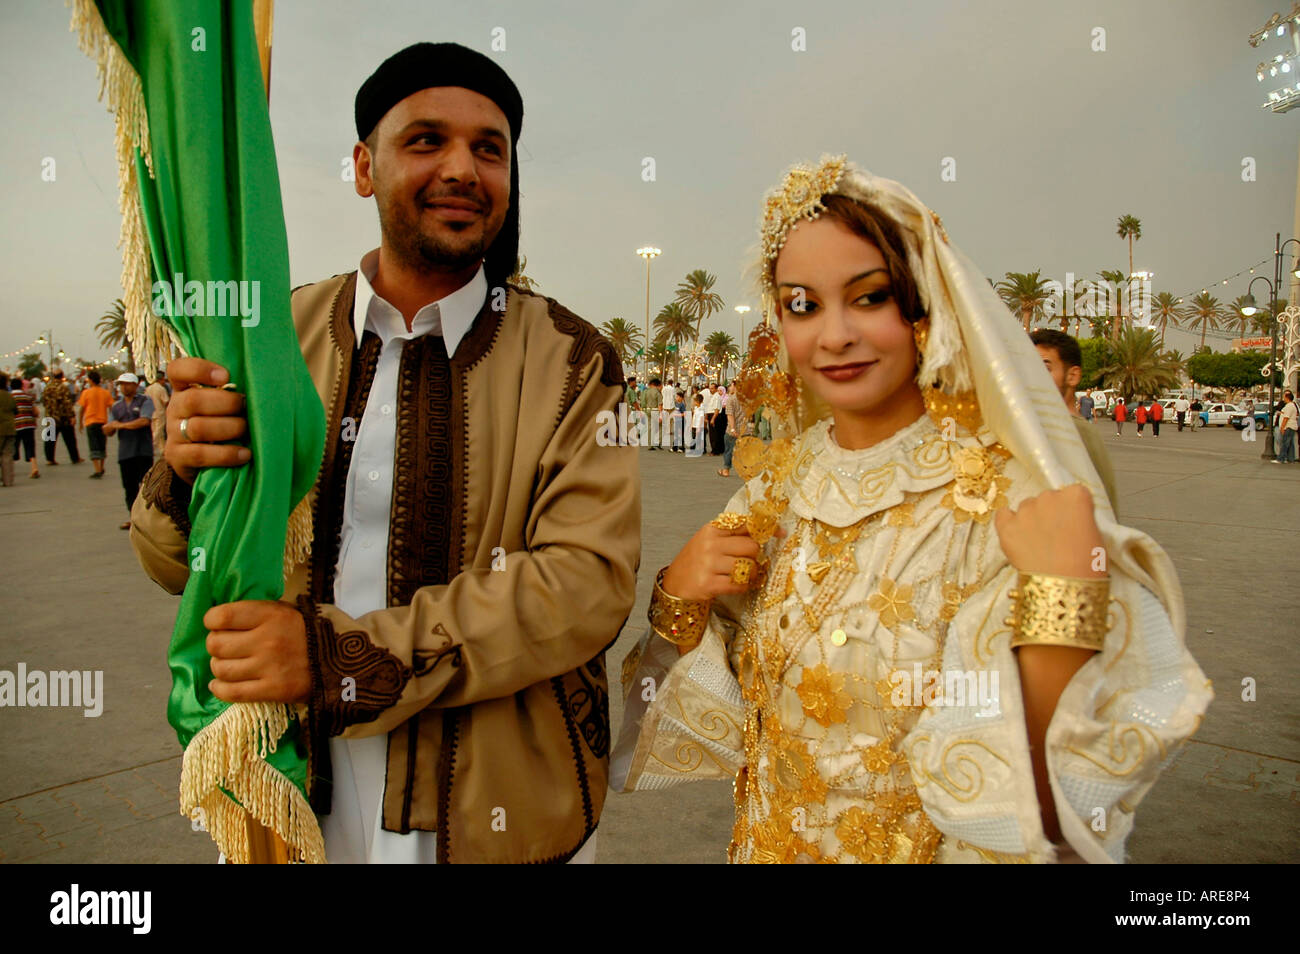 Porträt eines Paares tragen traditionelle Kleidung und hält eine libysche Fahne während der Feierlichkeiten in Tripolis, Libyen. Stockfoto